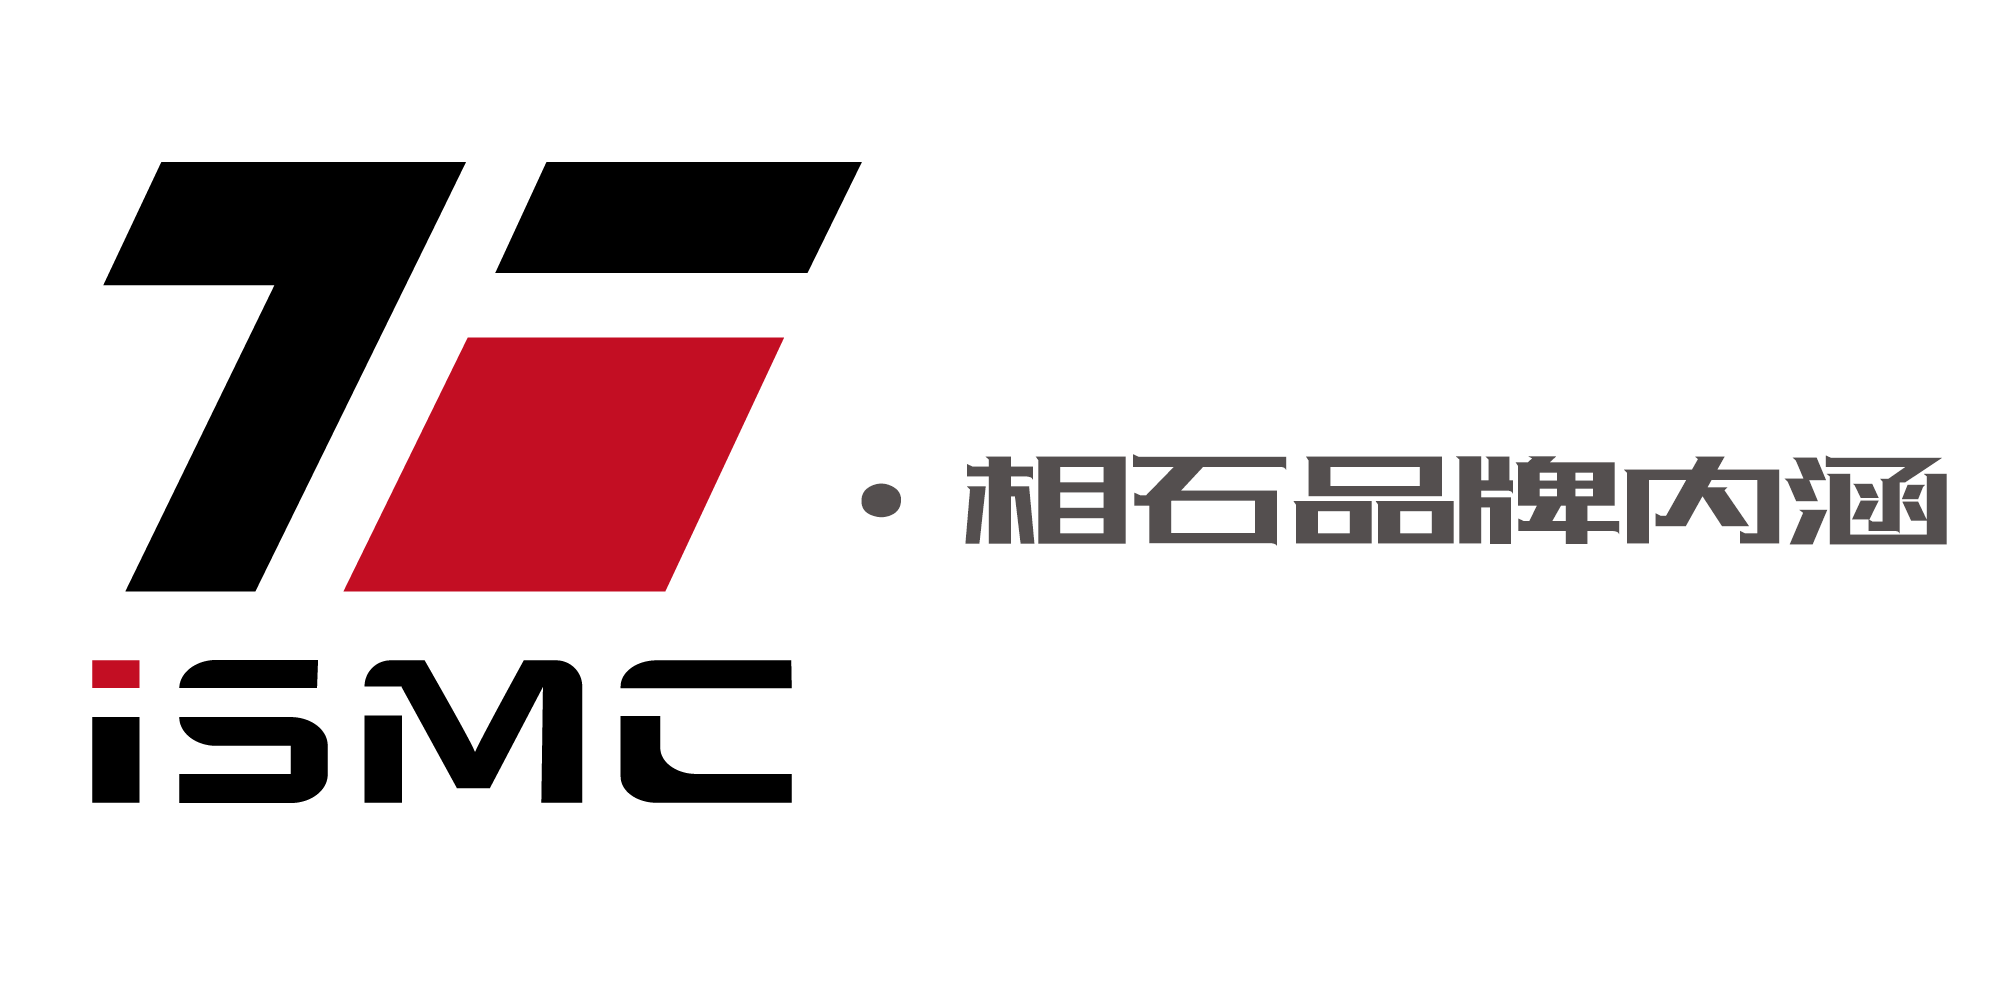 ISMC微伺服相石品牌内涵